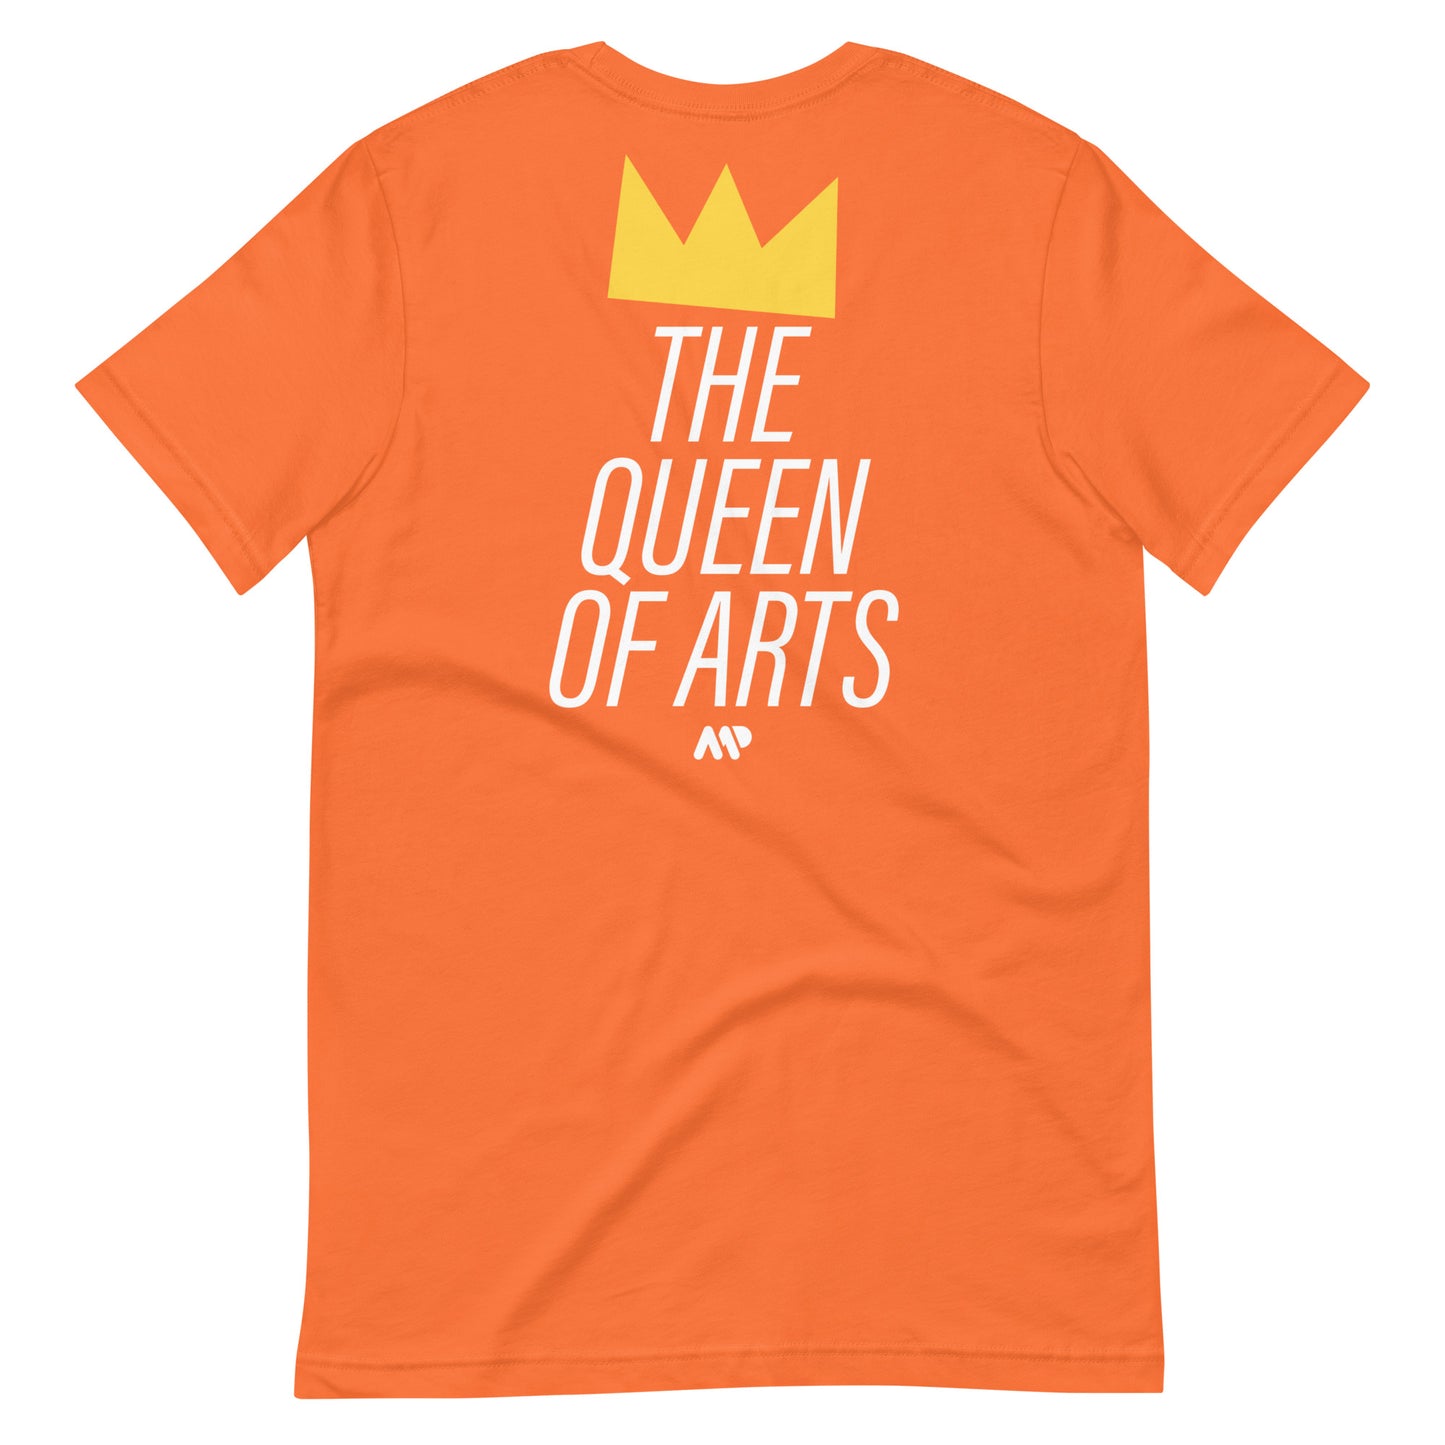 Das T-Shirt der Königin der Künste